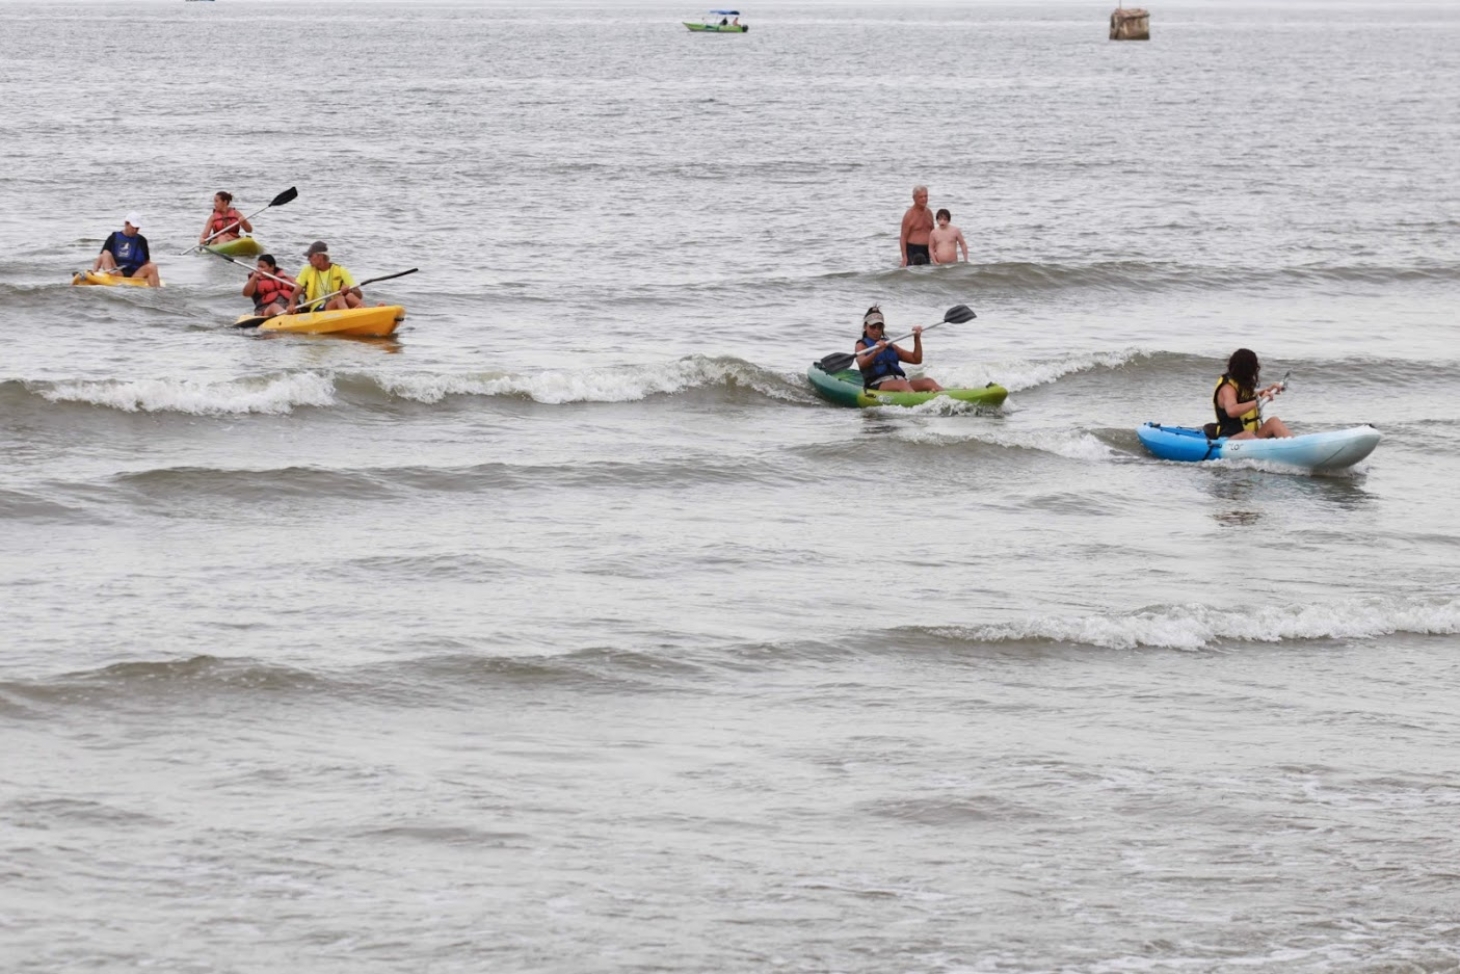 Aulas esportivas nas praias de Santos começam na próxima semana | Jornal da Orla